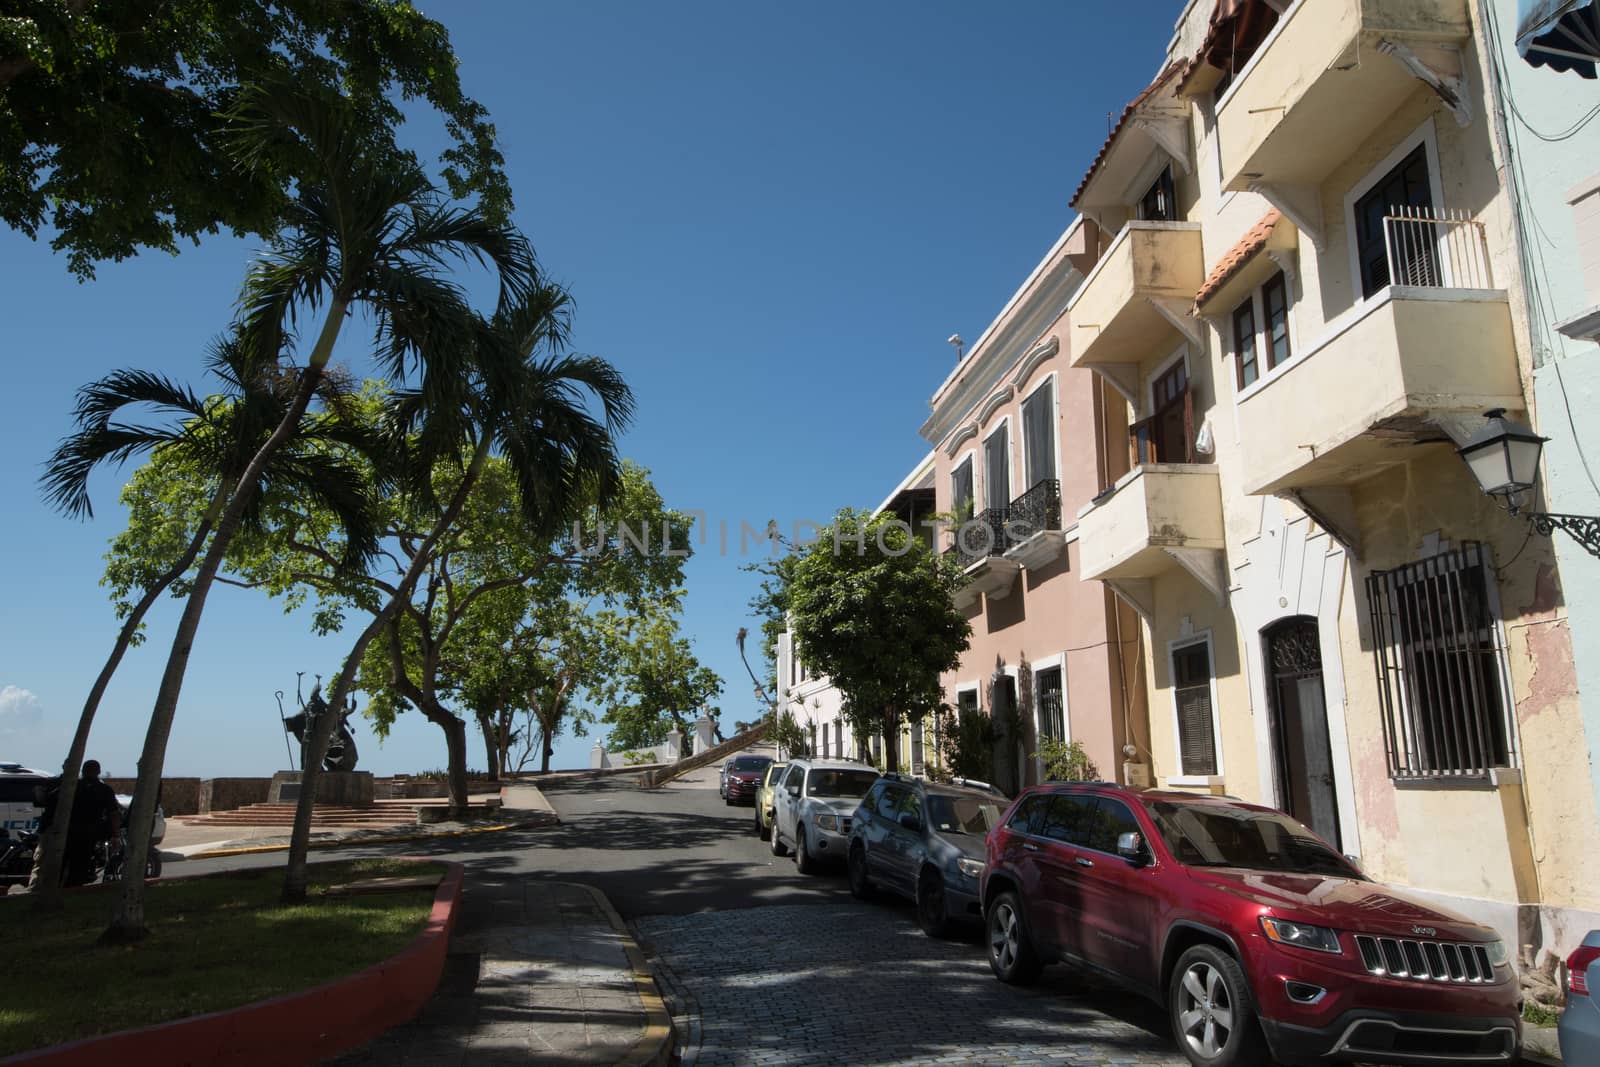 Old Town Buildings, San Juan, PR by cestes001